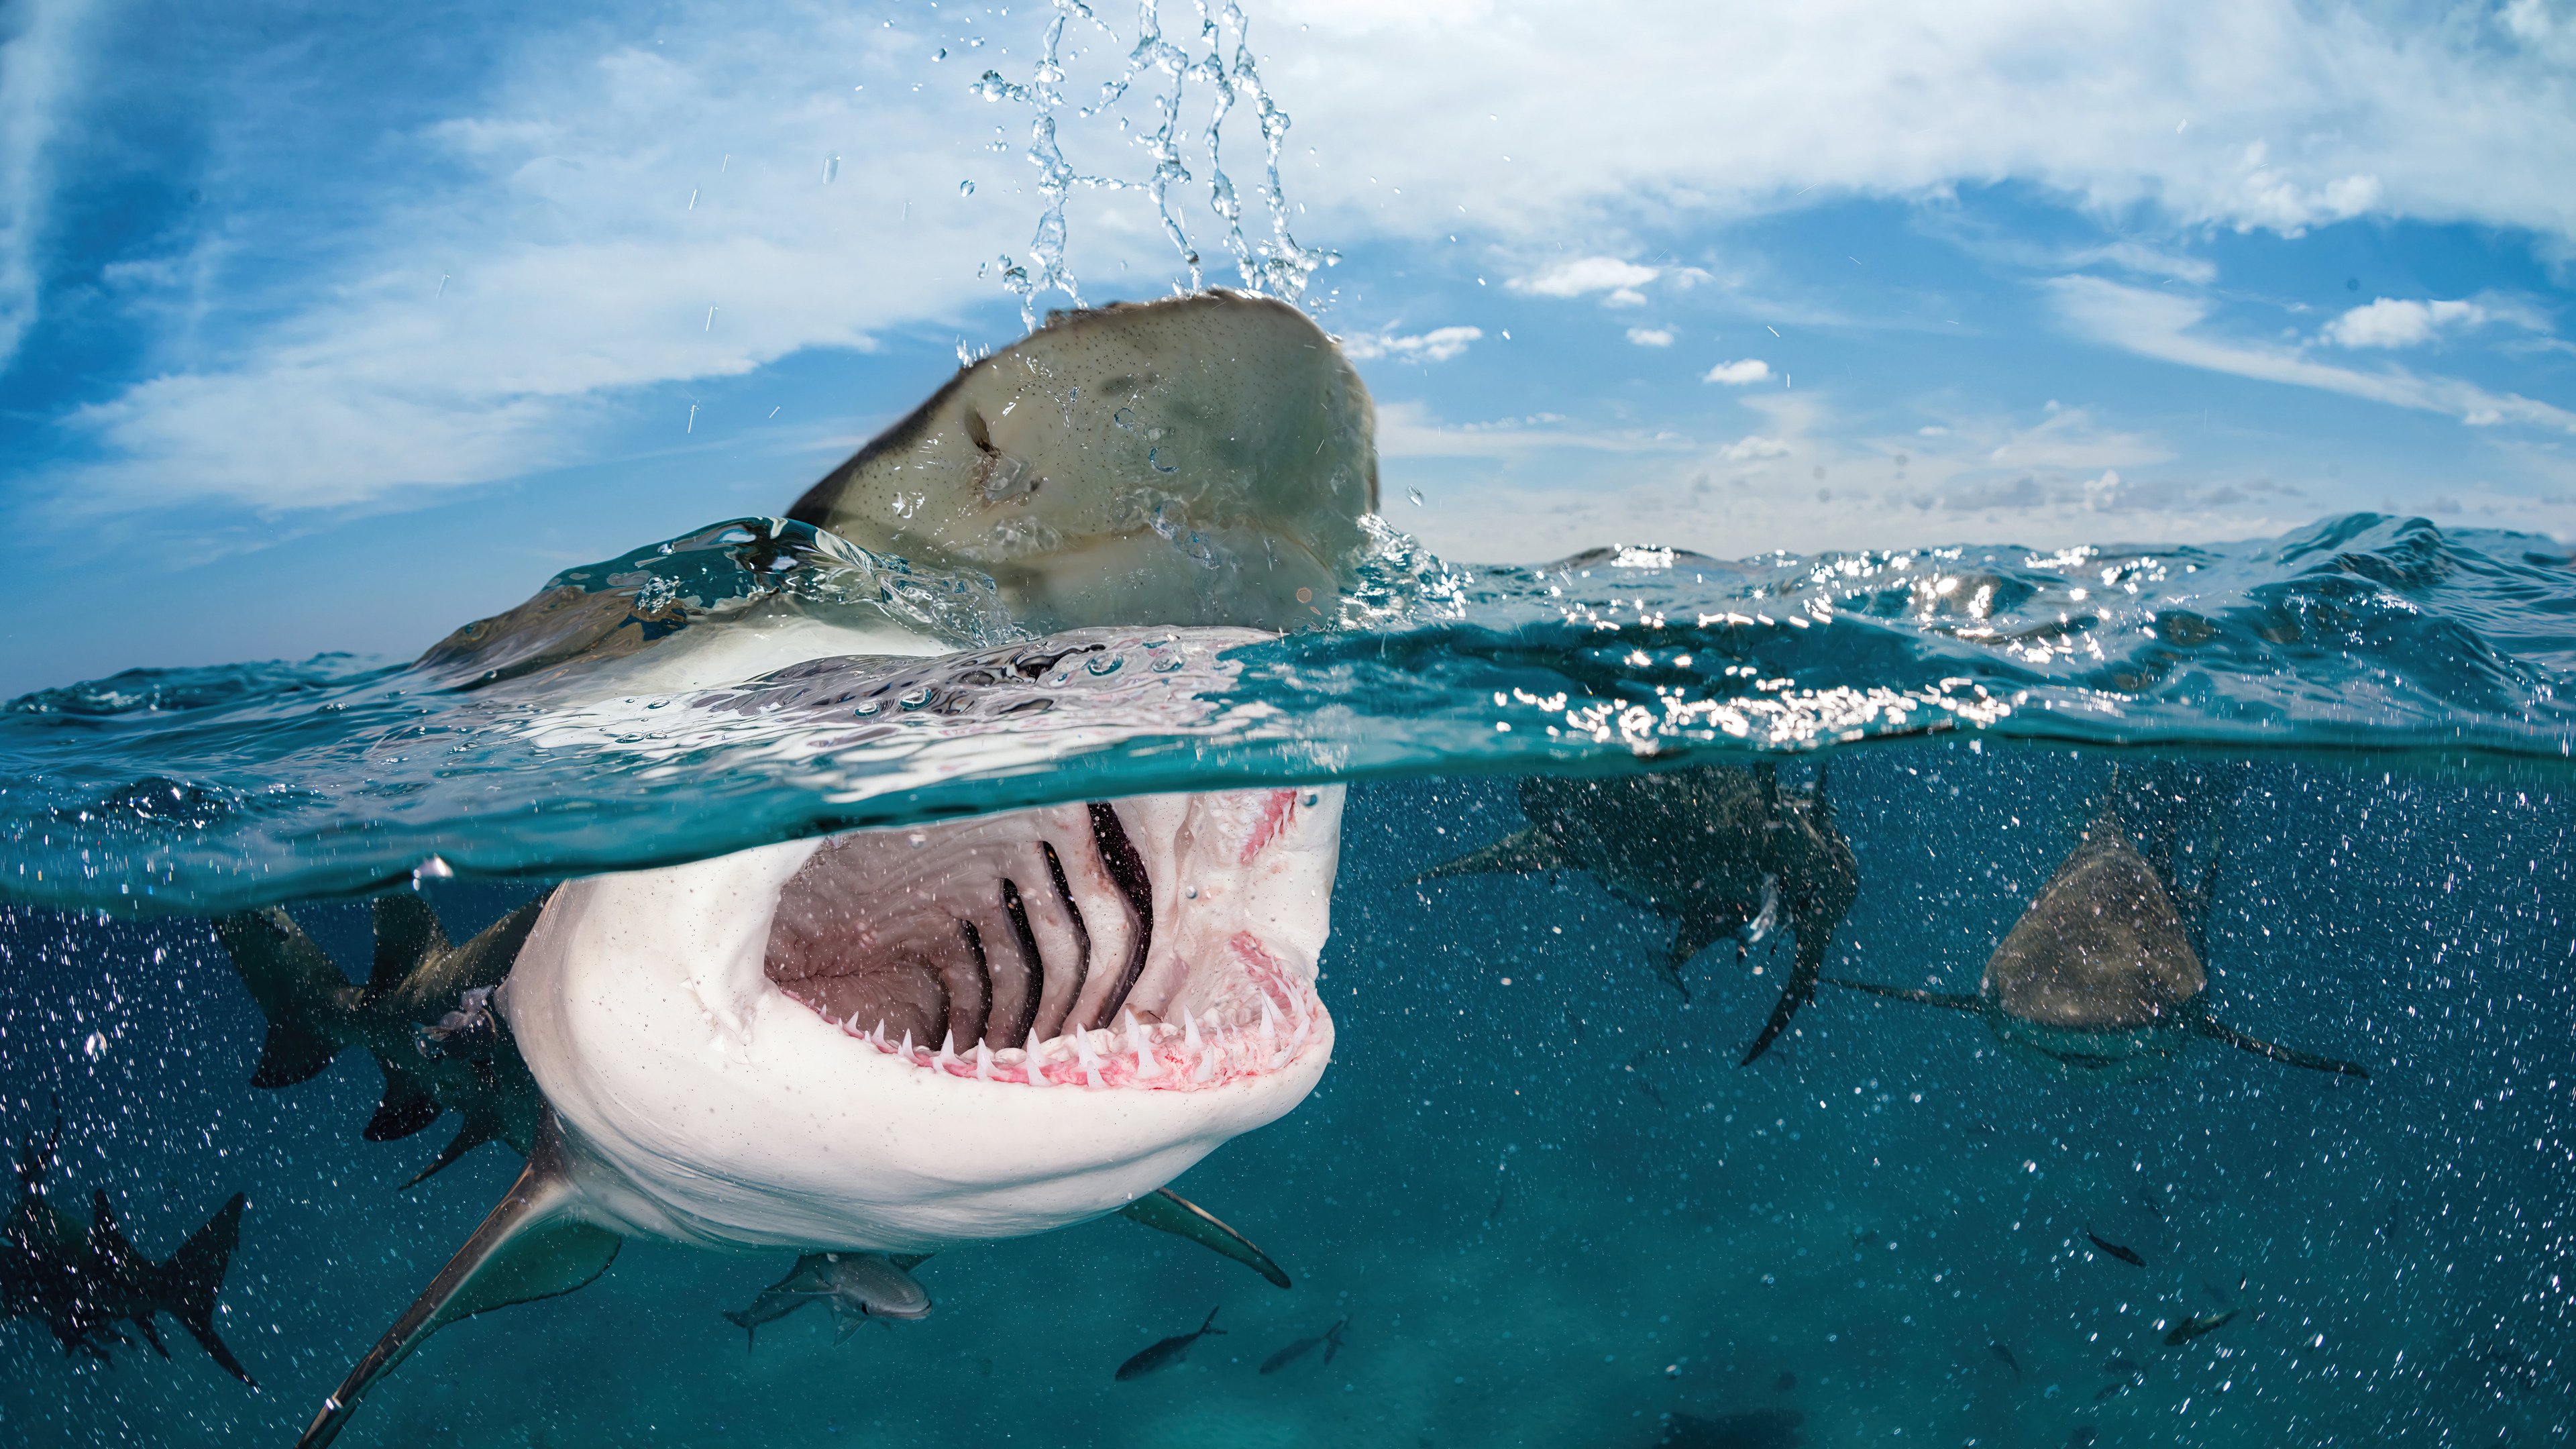 Wallpaper Shark under the water